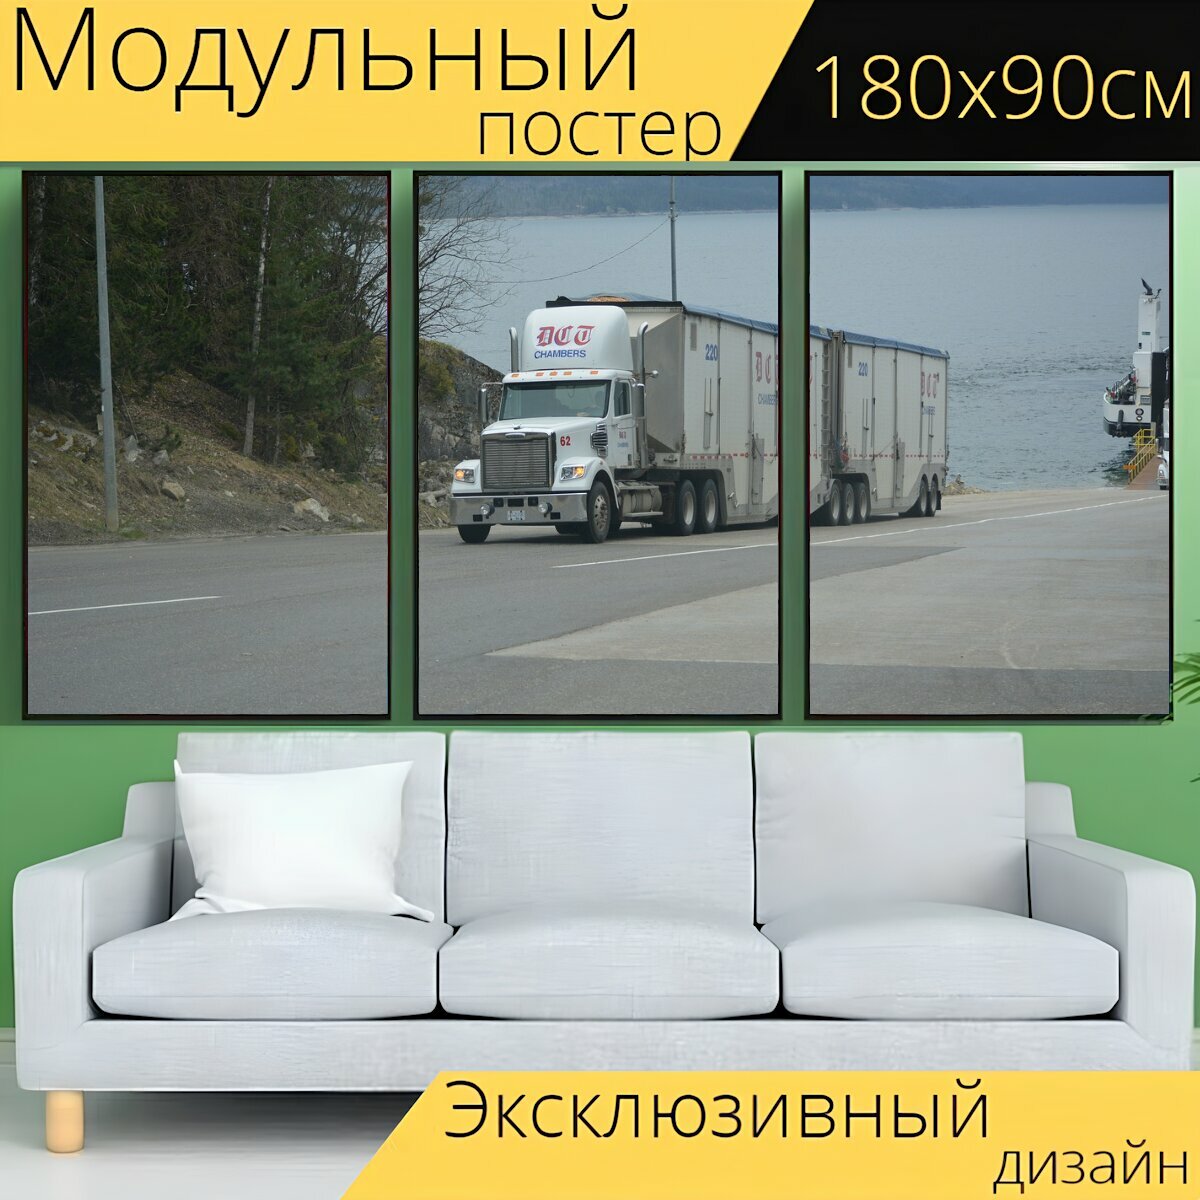 Модульный постер "Грузовая машина, грузовик, белый грузовик" 180 x 90 см. для интерьера